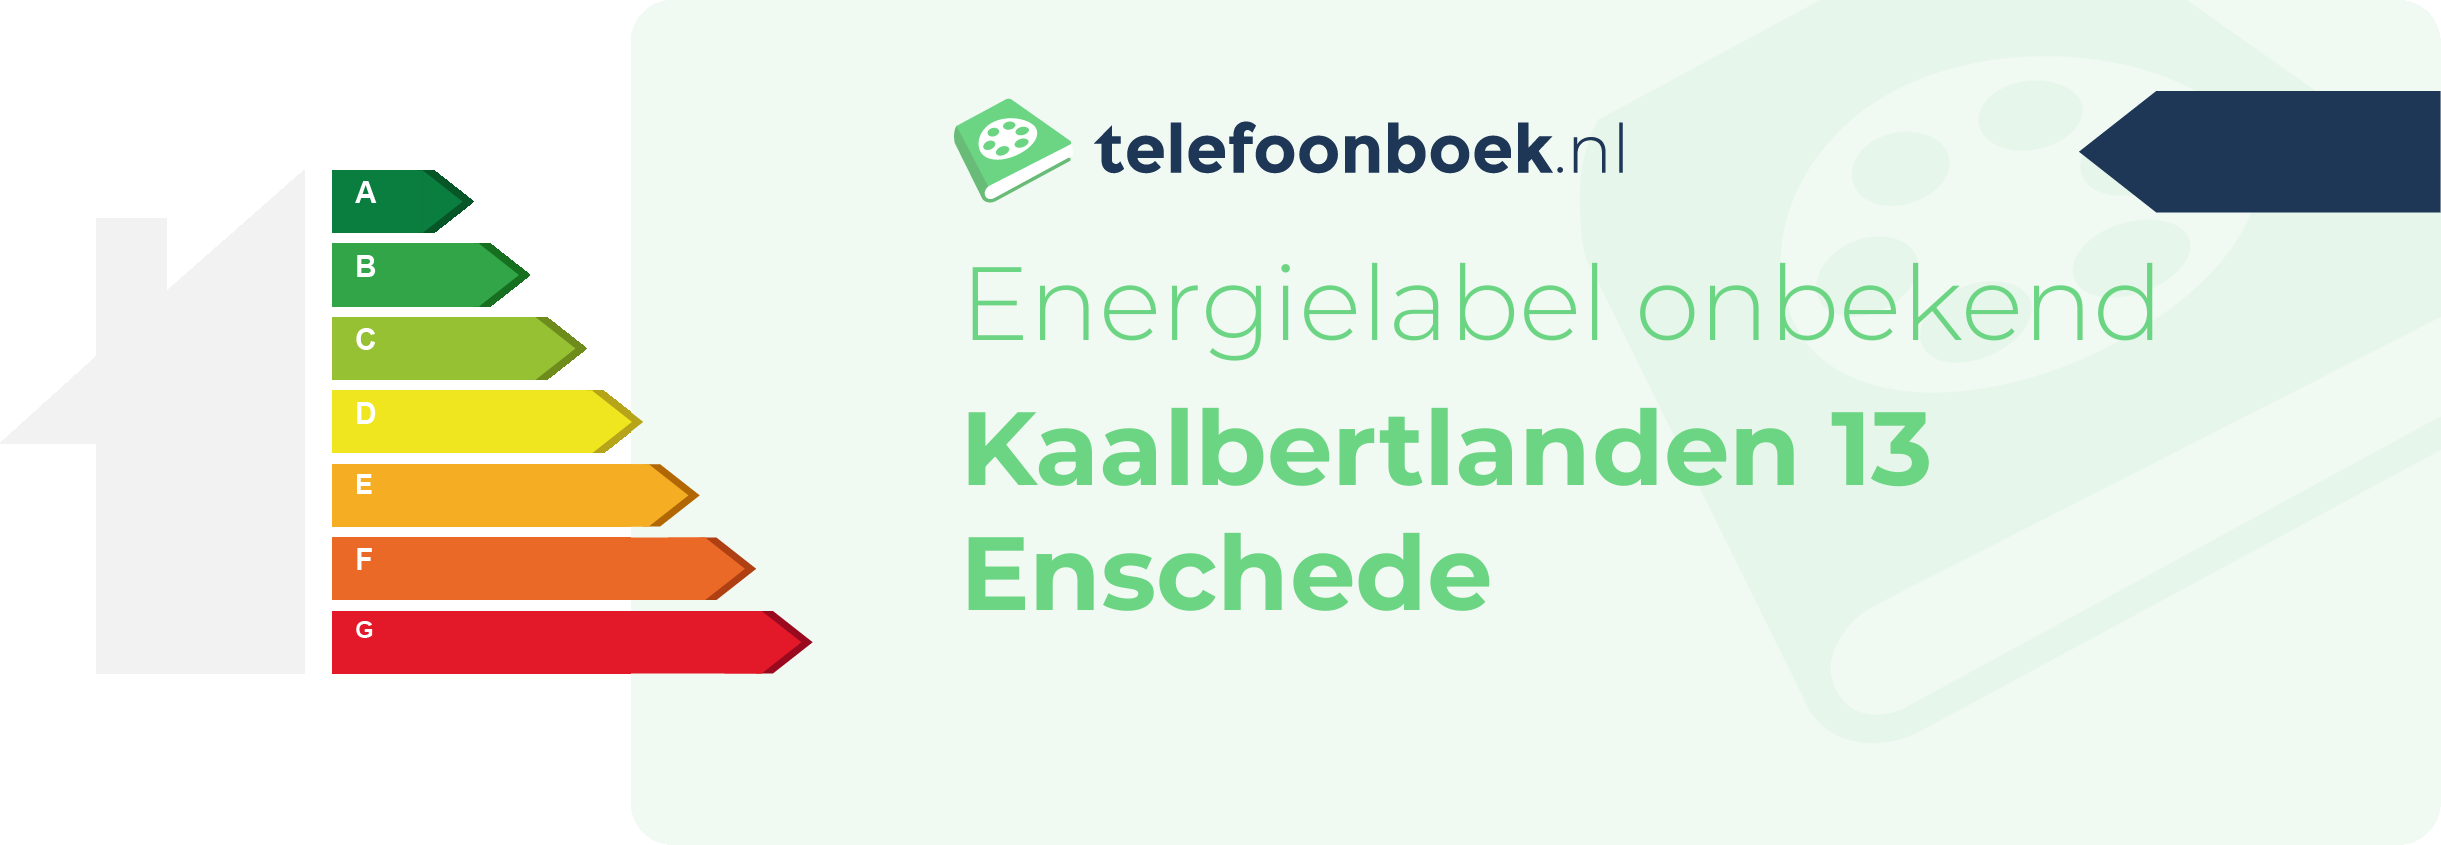 Energielabel Kaalbertlanden 13 Enschede